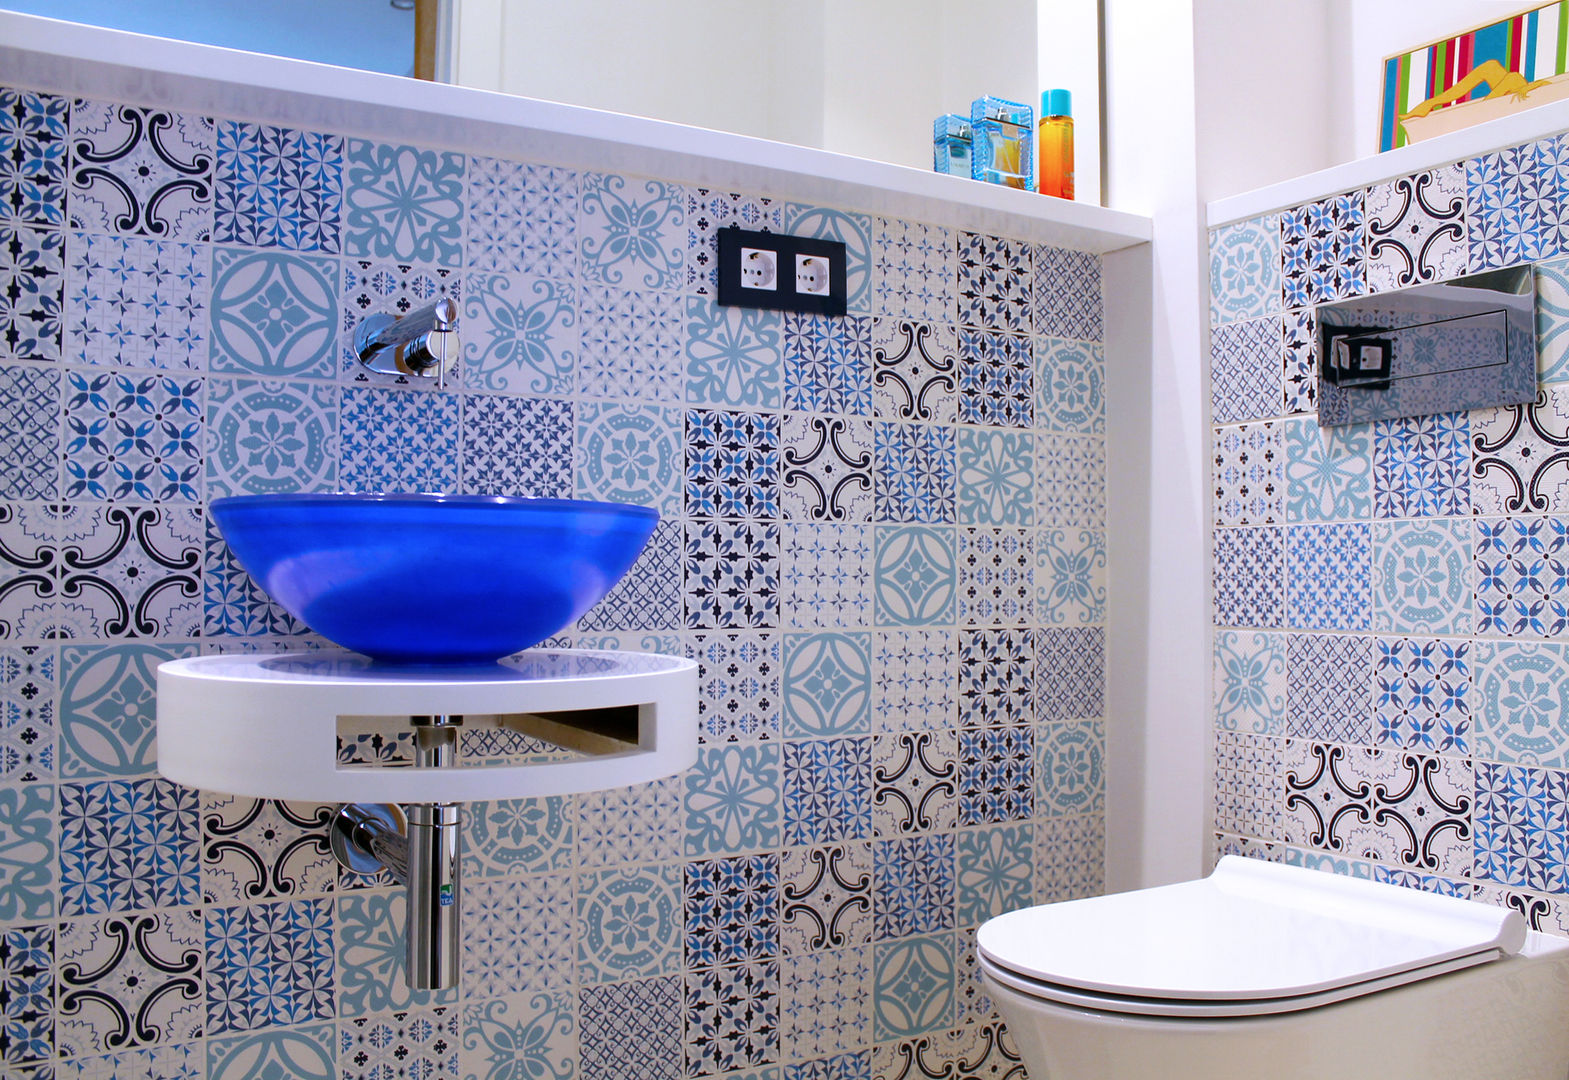 Baño suite. Eséncia mediterranea, lauraStrada Interiors lauraStrada Interiors ห้องน้ำ